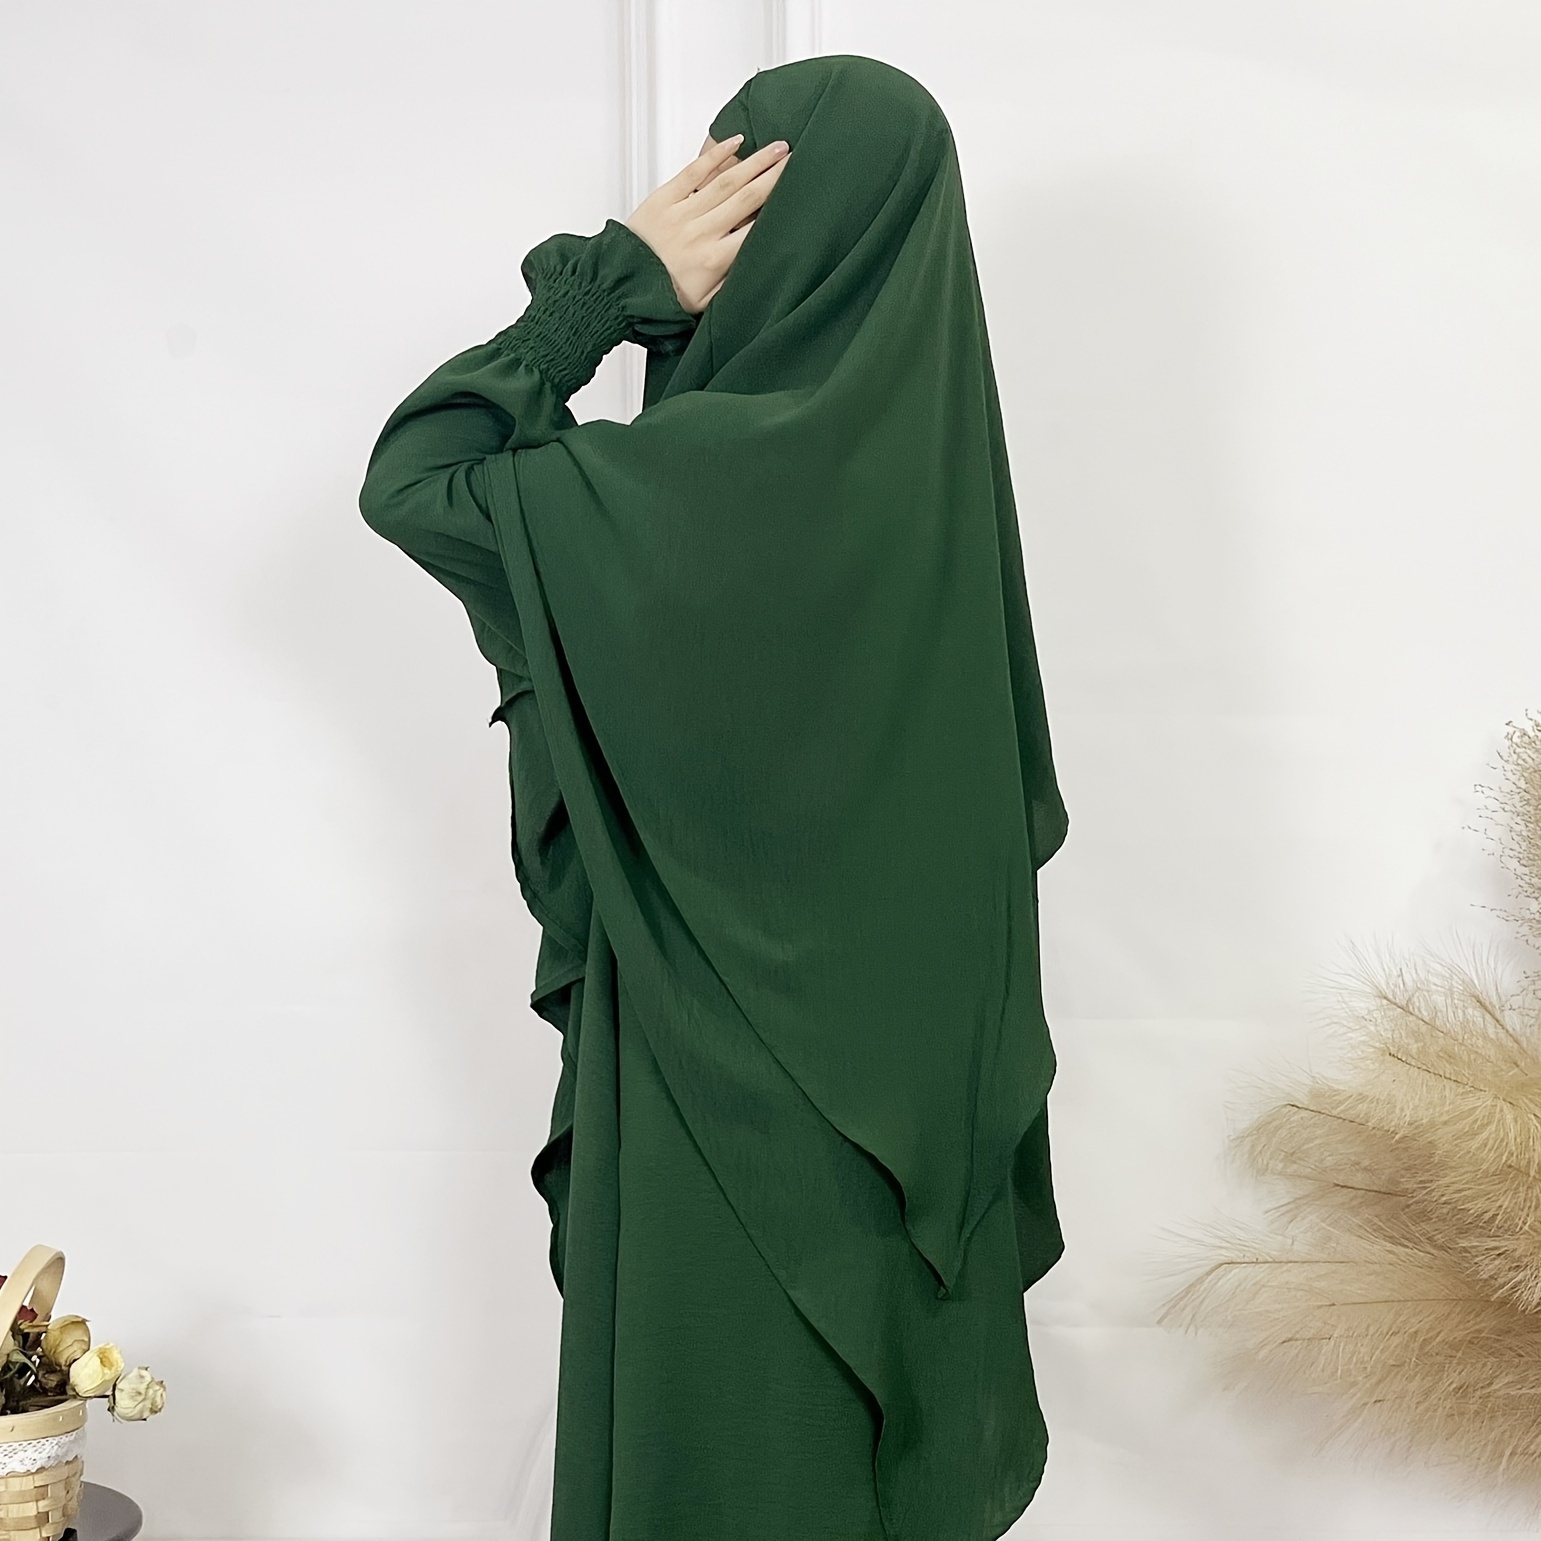 حجاب أنيق طويل للنساء على شكل كعكة، خيارات متعددة من الألوان الثابتة، هدايا حجاب خمار محتشمة لعيد الفطر